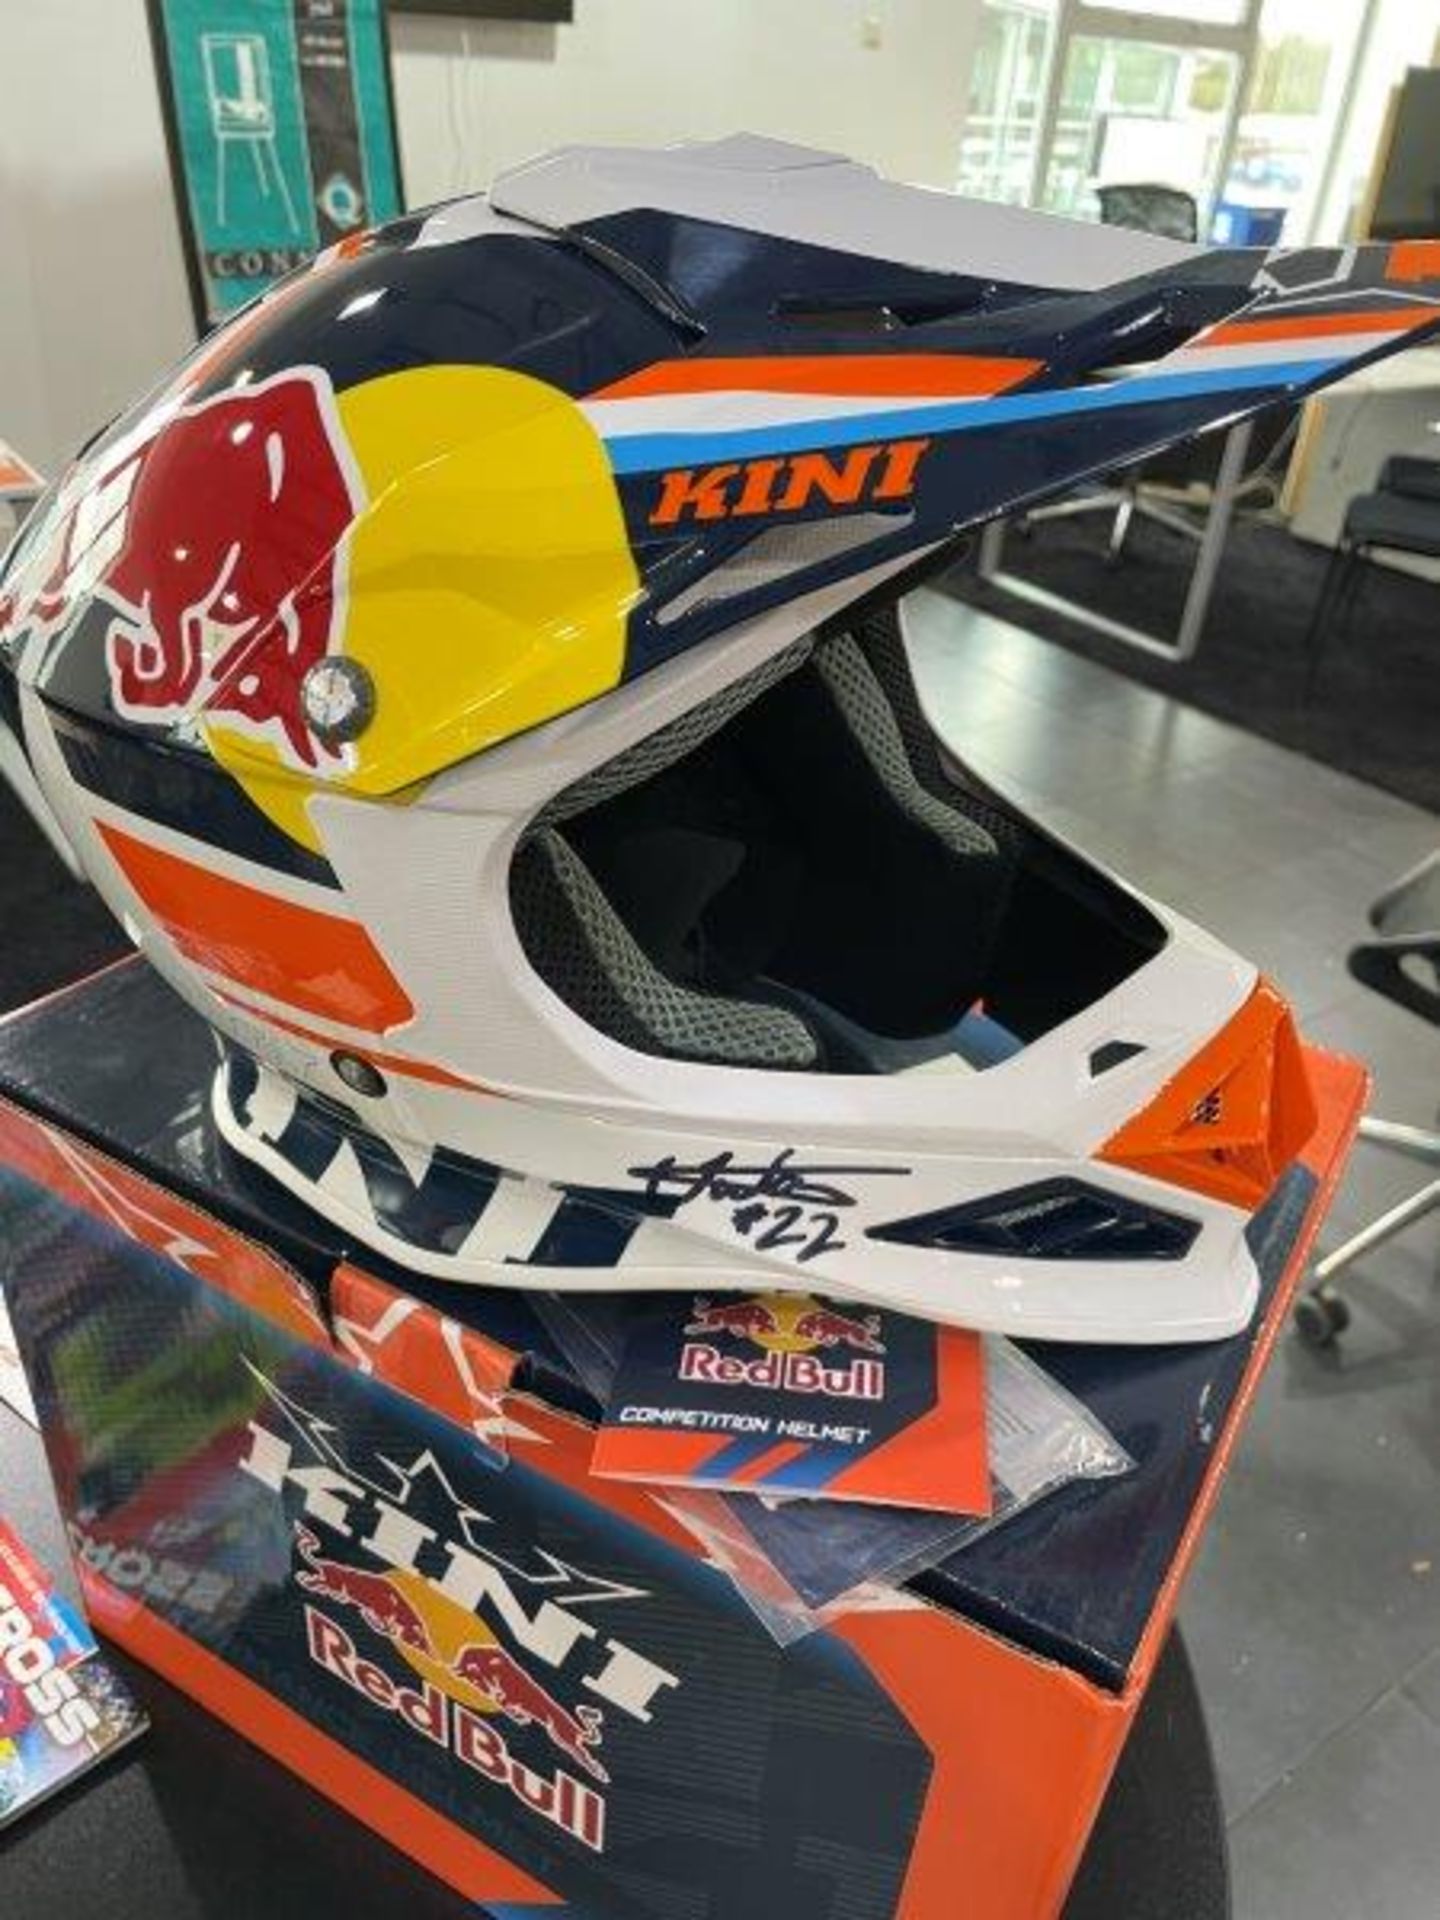 KINI Redbull Autographed Competition Motorbike Helmet - Image 3 of 15